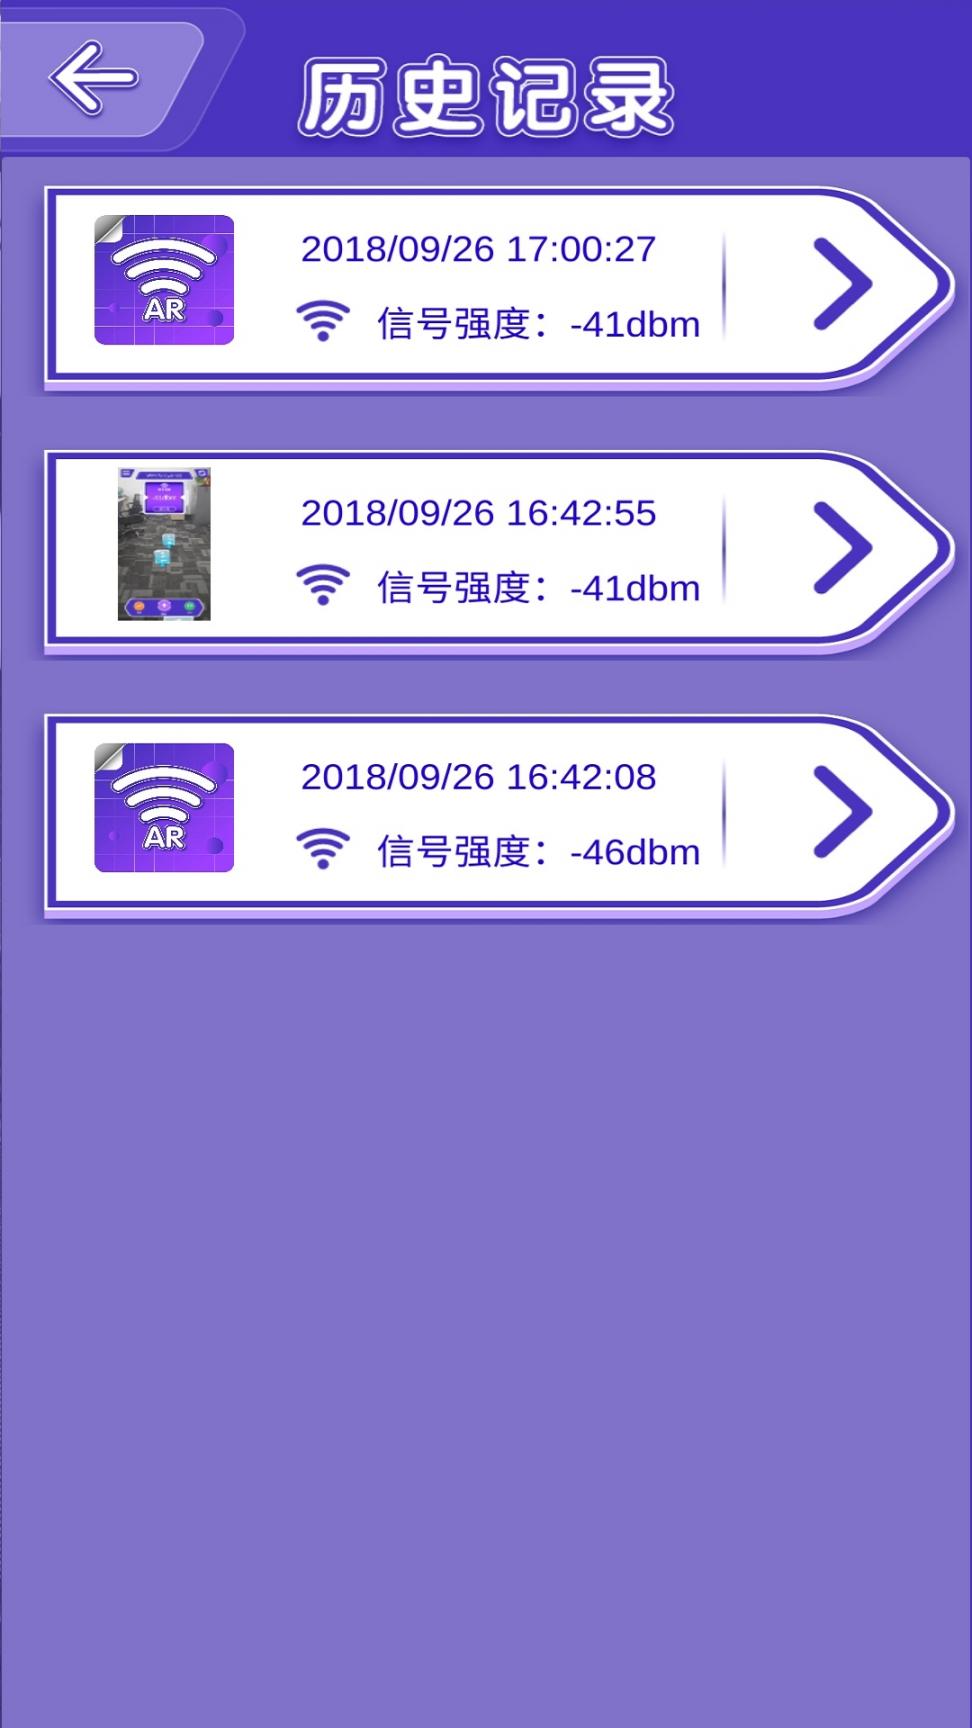 AR Wifi信号工具app3